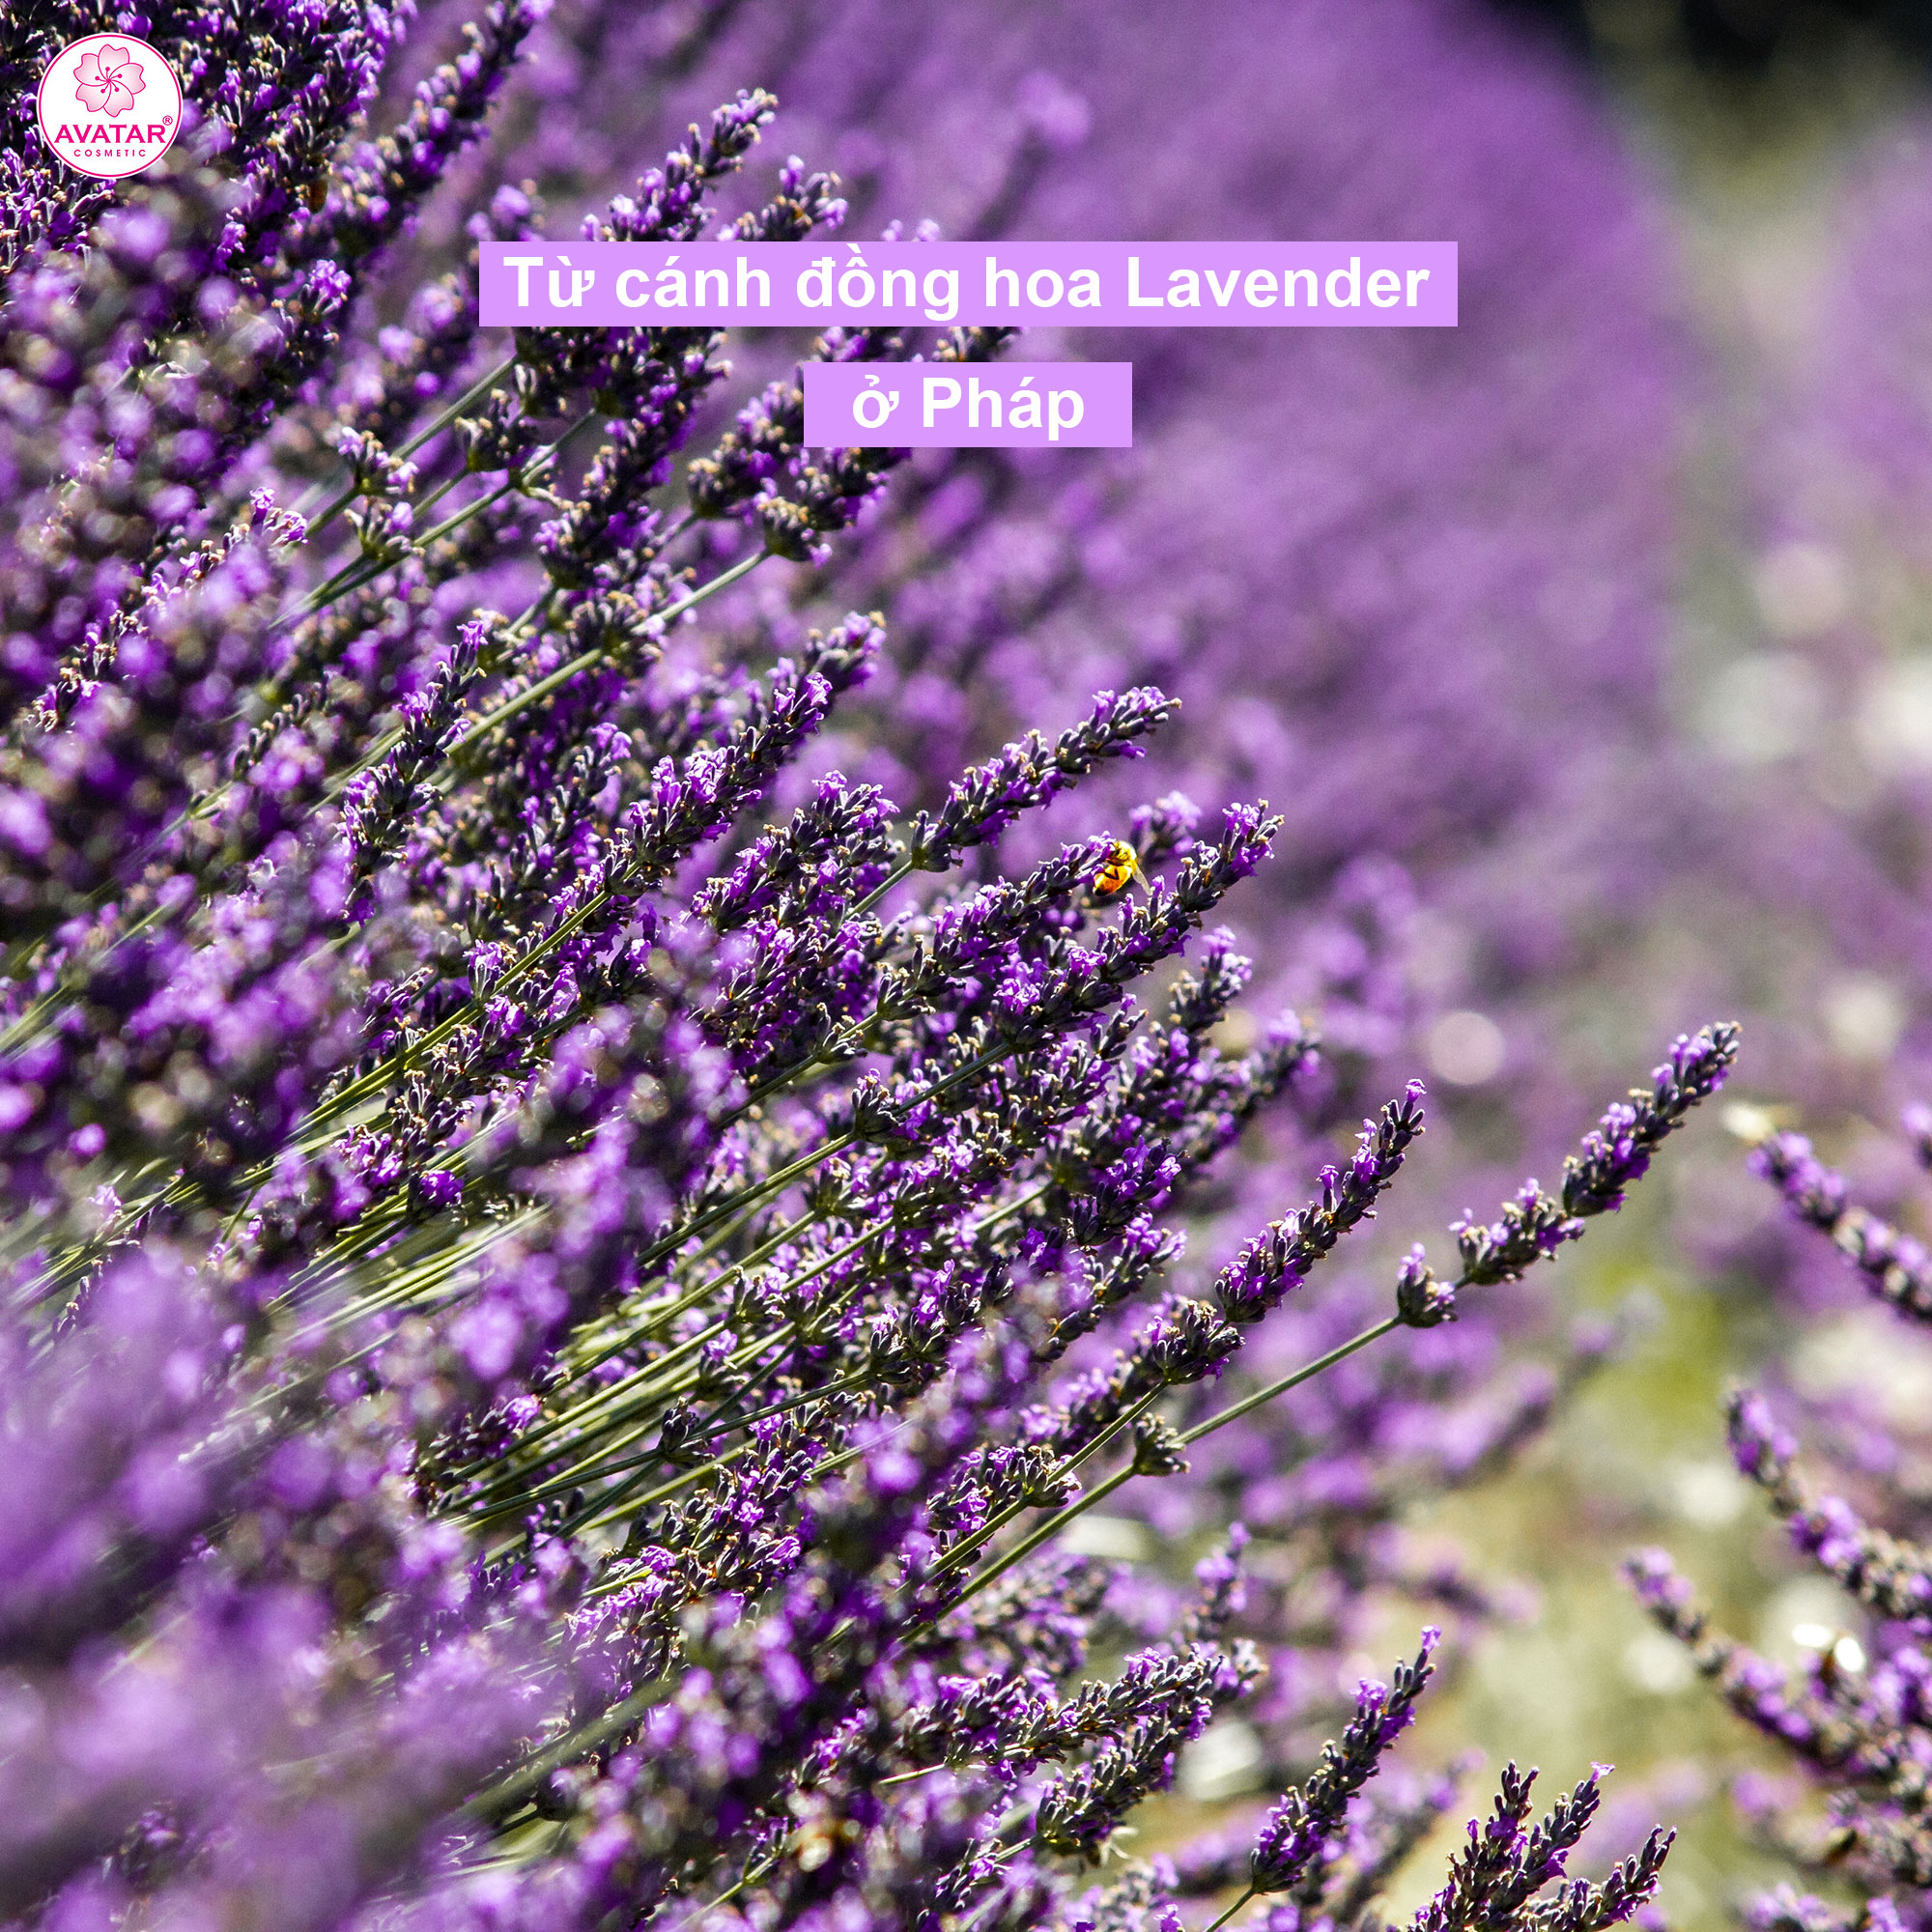 Sữa tắm Nhật  Bản Cao cấp AVATAR Lavender 500ml - Cánh hoa thật cùng tinh chất thiên nhiên 100%